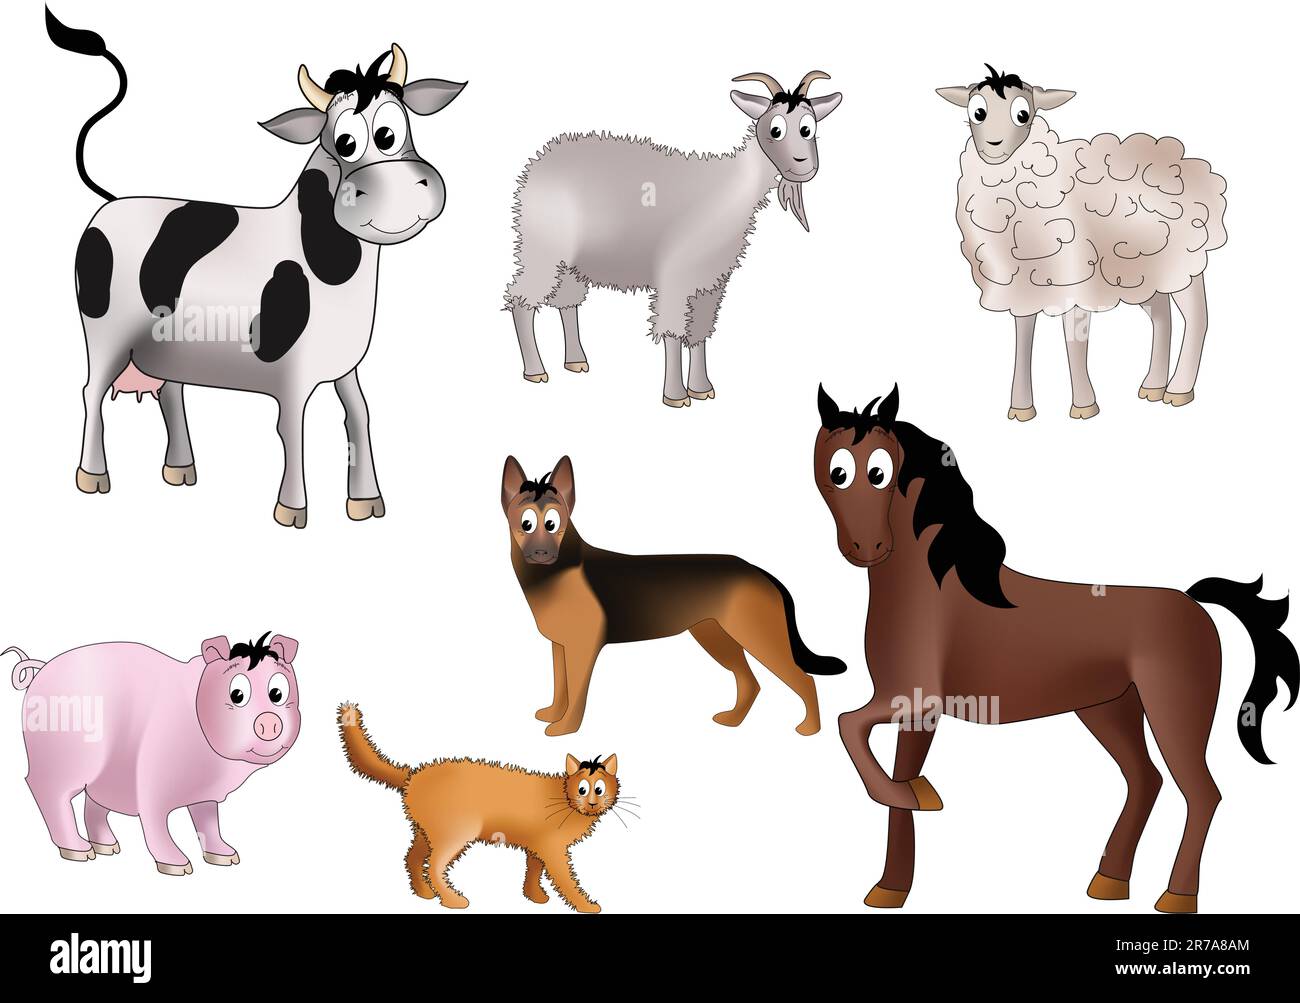 Sette animali domestici: Mucca, capra, pecora, cane, cavallo, maiale e gatto - disegnati in stile bambino gentile Illustrazione Vettoriale